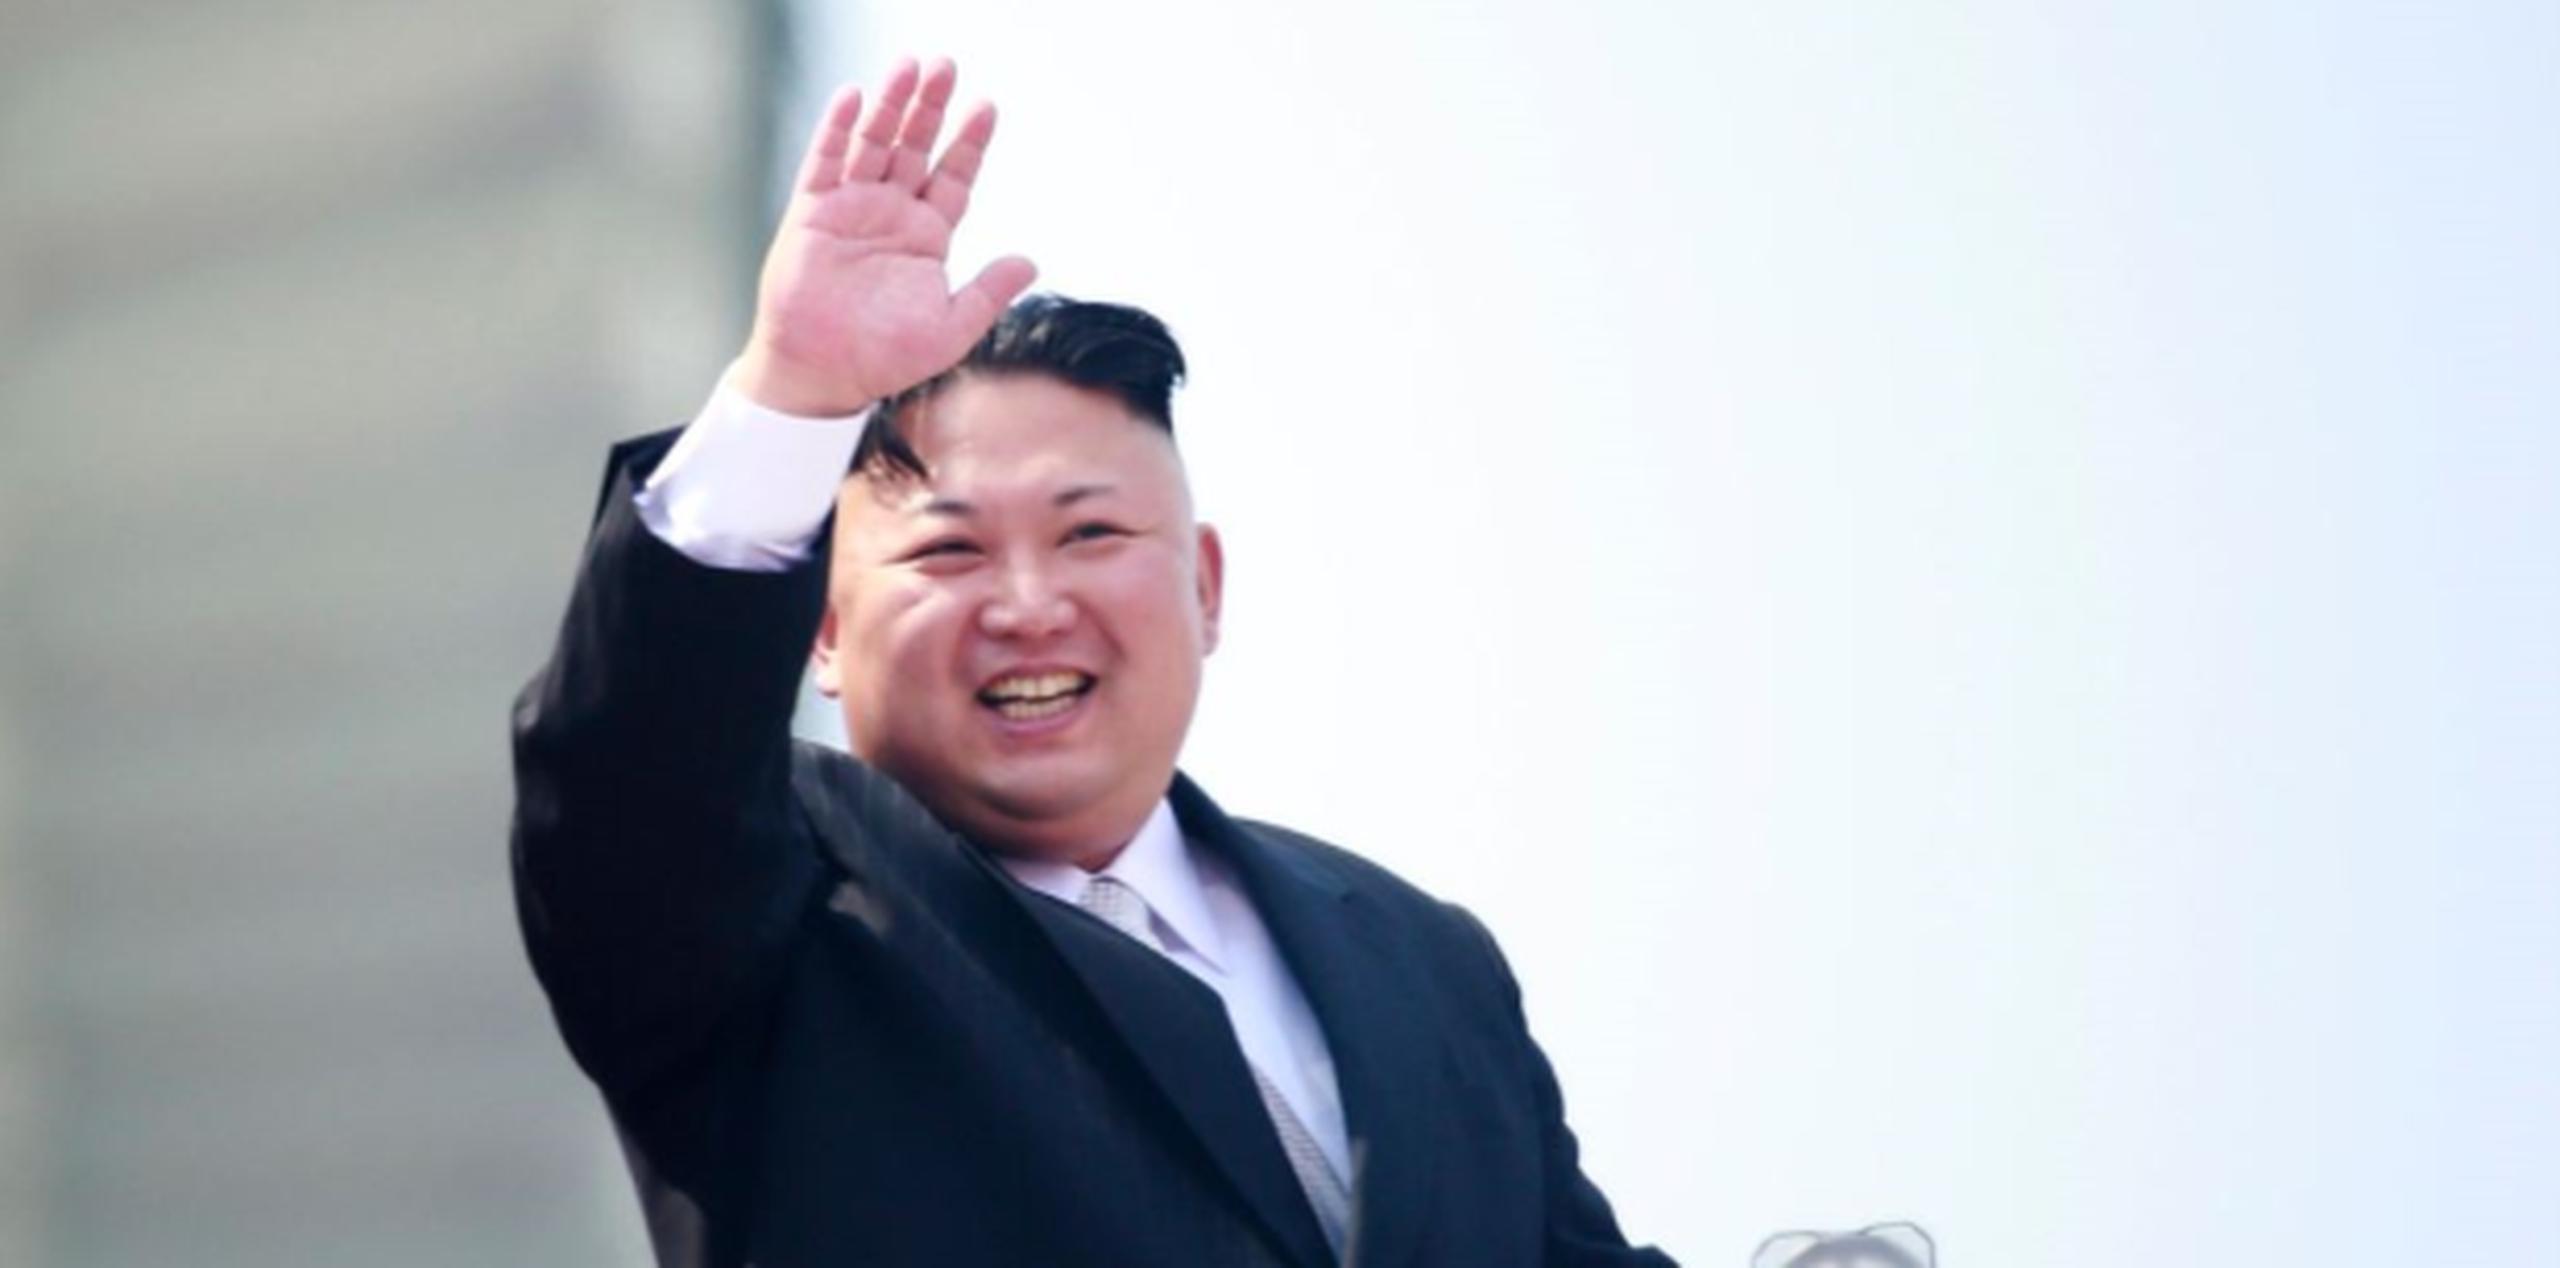 El hombre, de más de 50 años e identificado por su apellido, Kim, estaba involucrado en programas de ayuda a Corea del Norte. (EFE)